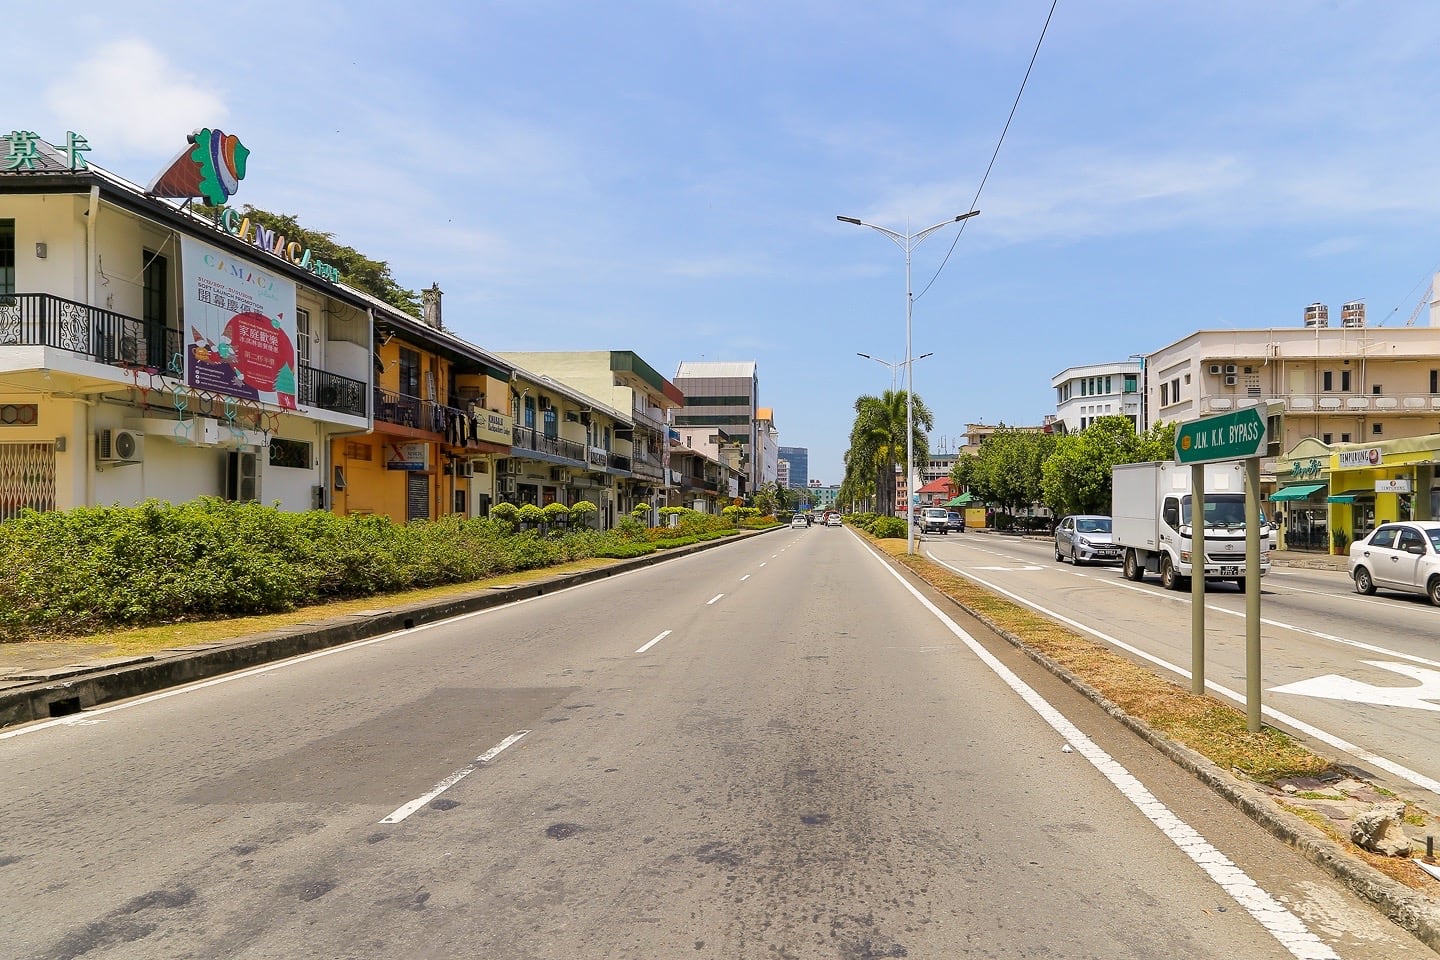 Kota Kinabalu, Sabah, Malaysia (Borneo)